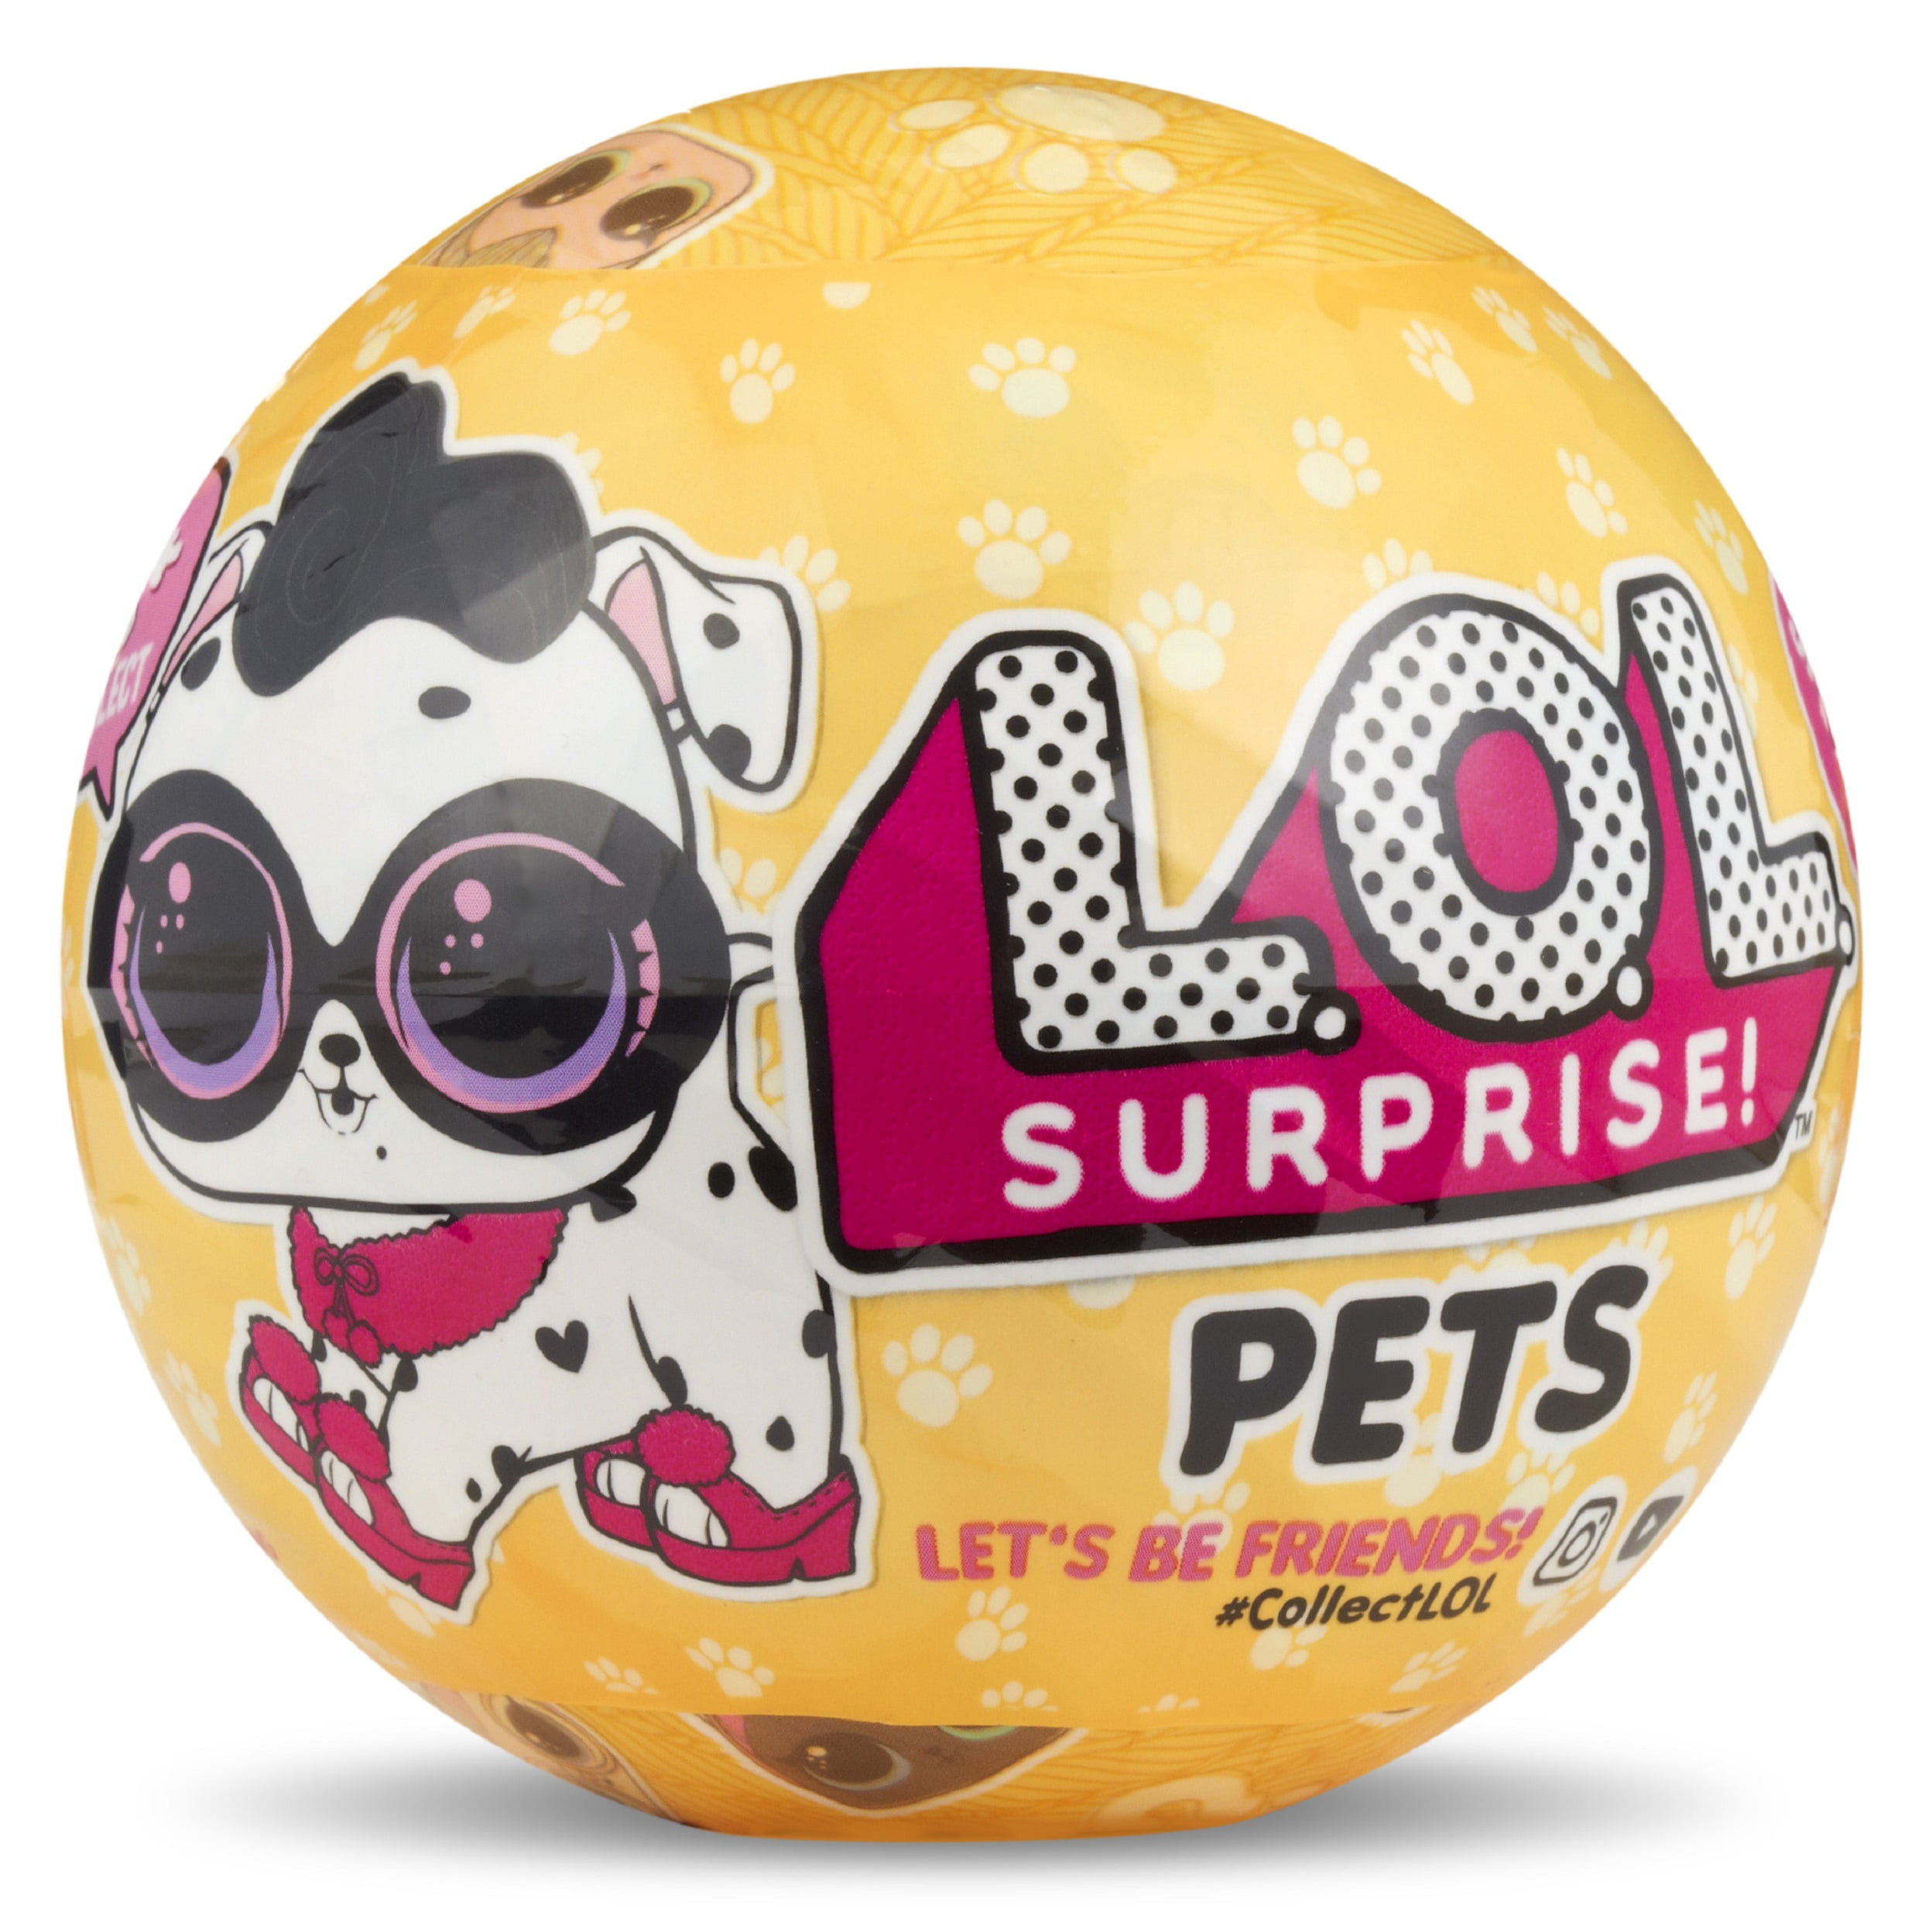 L.O.L Surprise! Pets Series 3